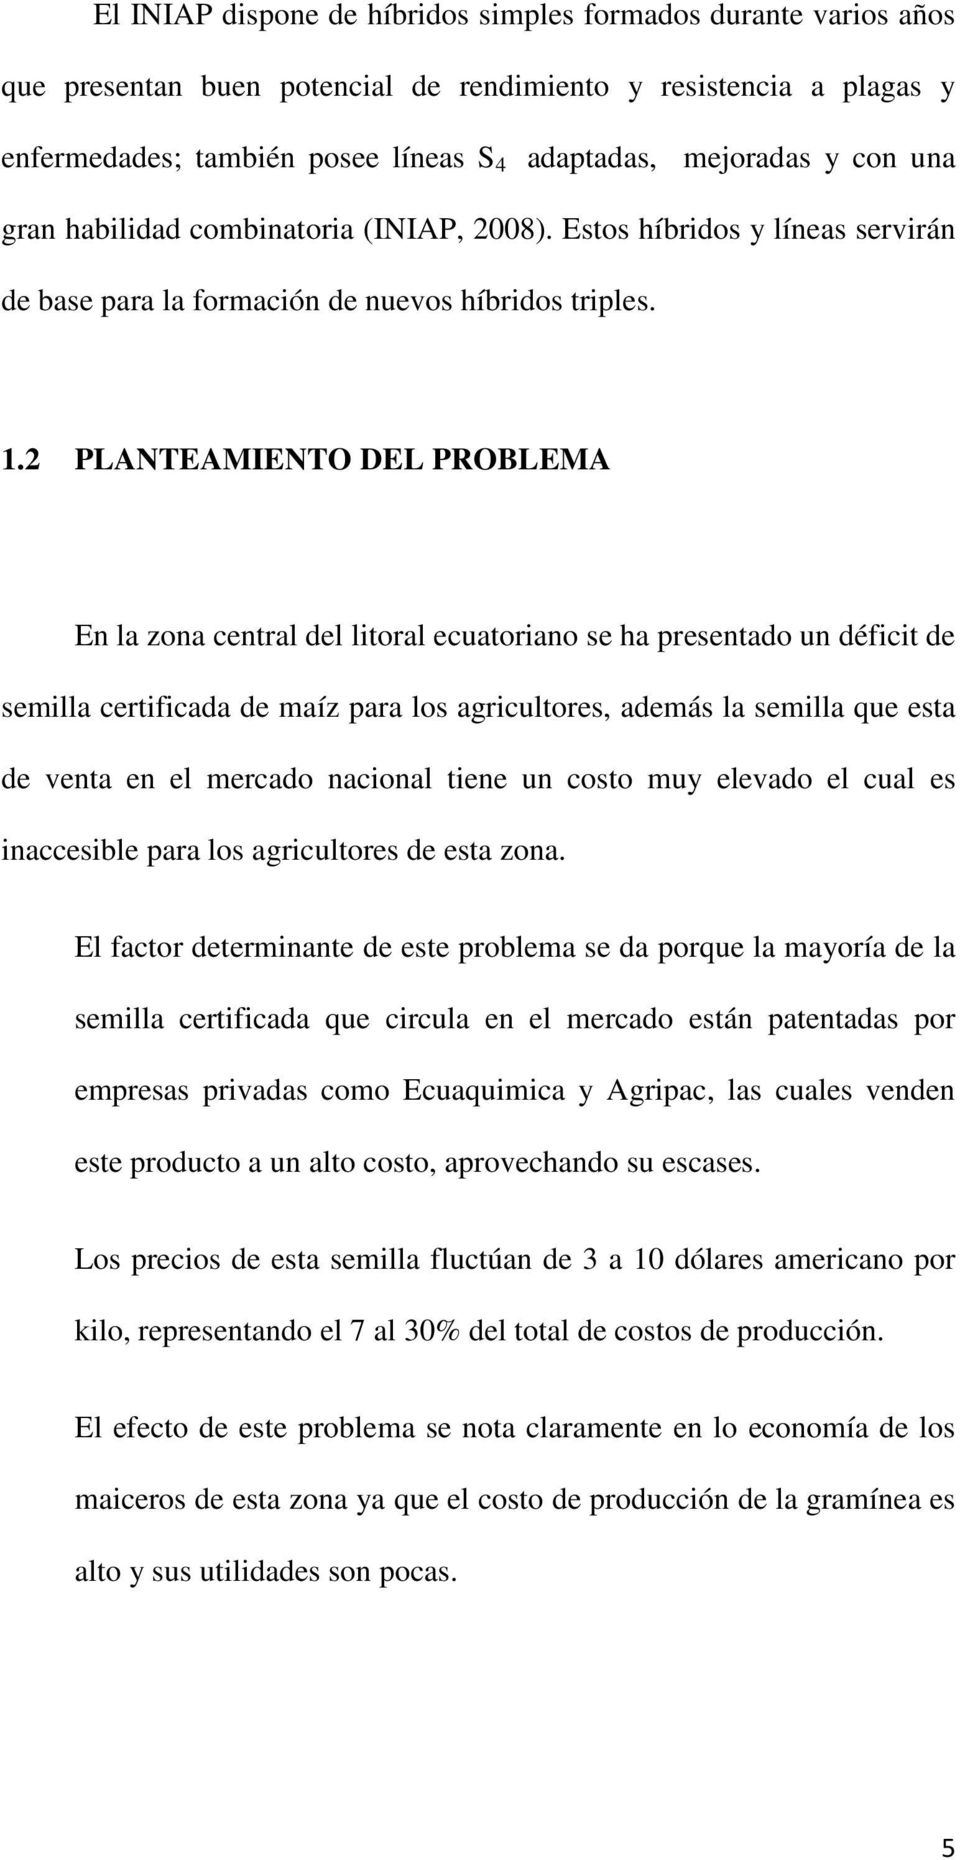 2 PLANTEAMIENTO DEL PROBLEMA En la zona central del litoral ecuatoriano se ha presentado un déficit de semilla certificada de maíz para los agricultores, además la semilla que esta de venta en el